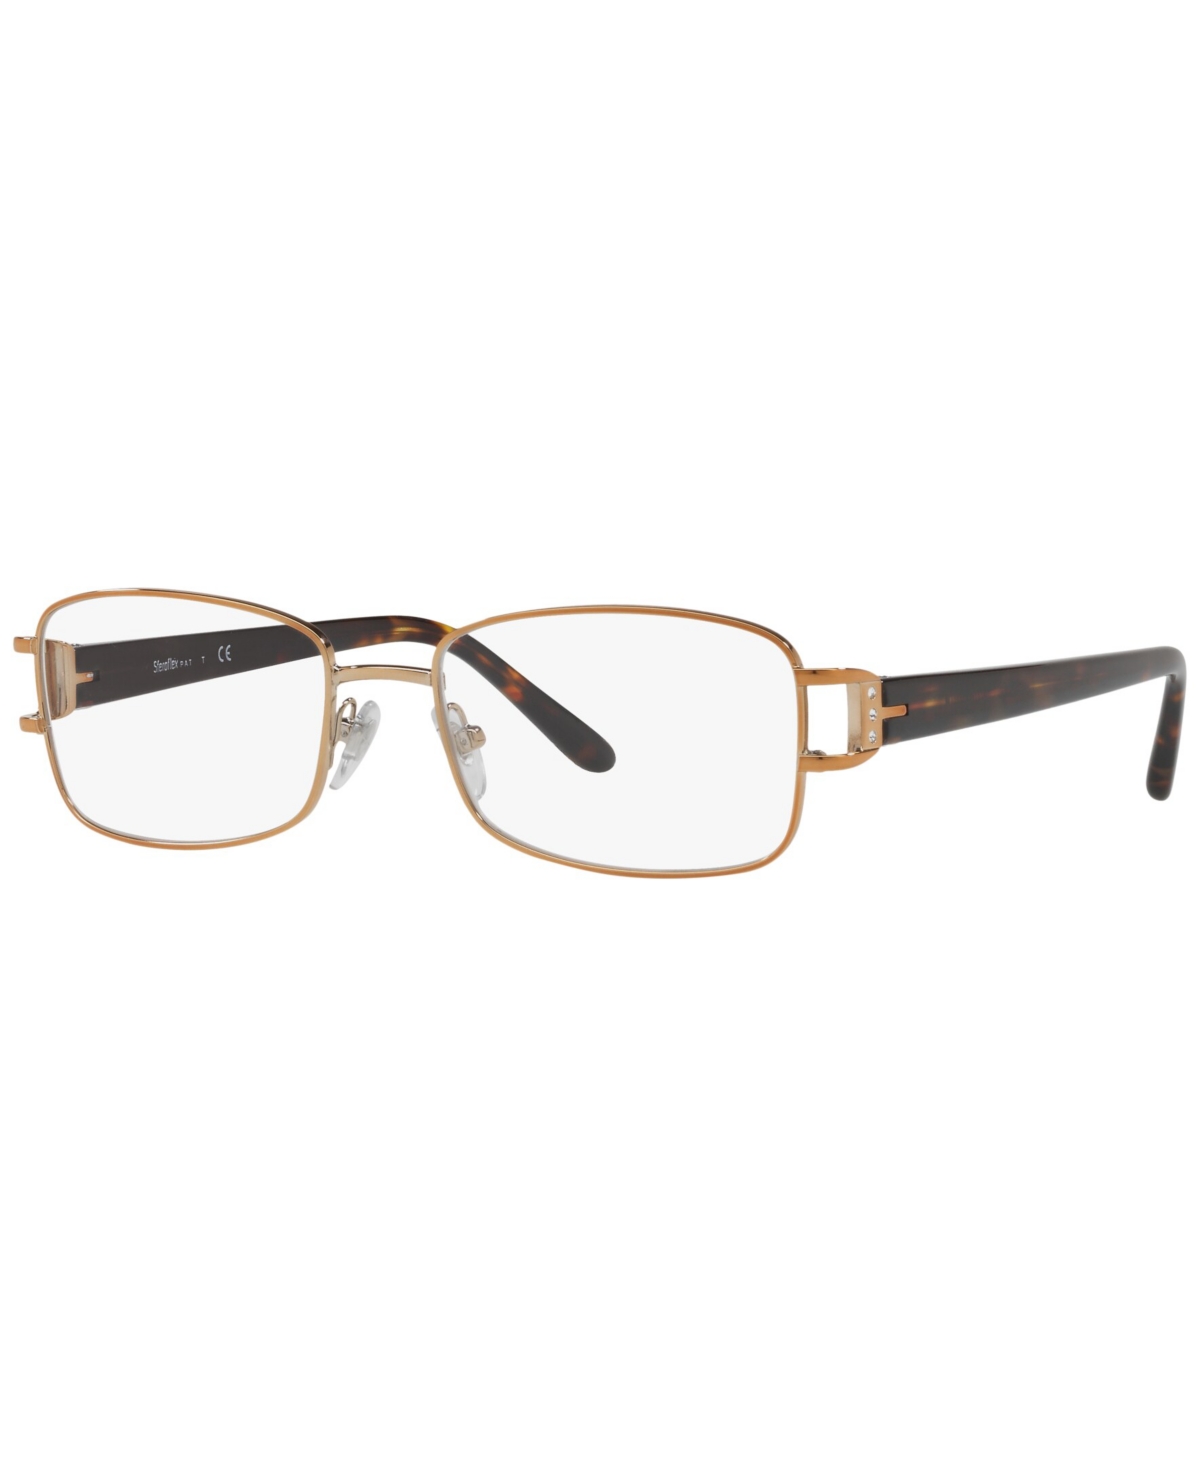 SF2597B Unisex Rectangle Eyeglasses - Light Copper